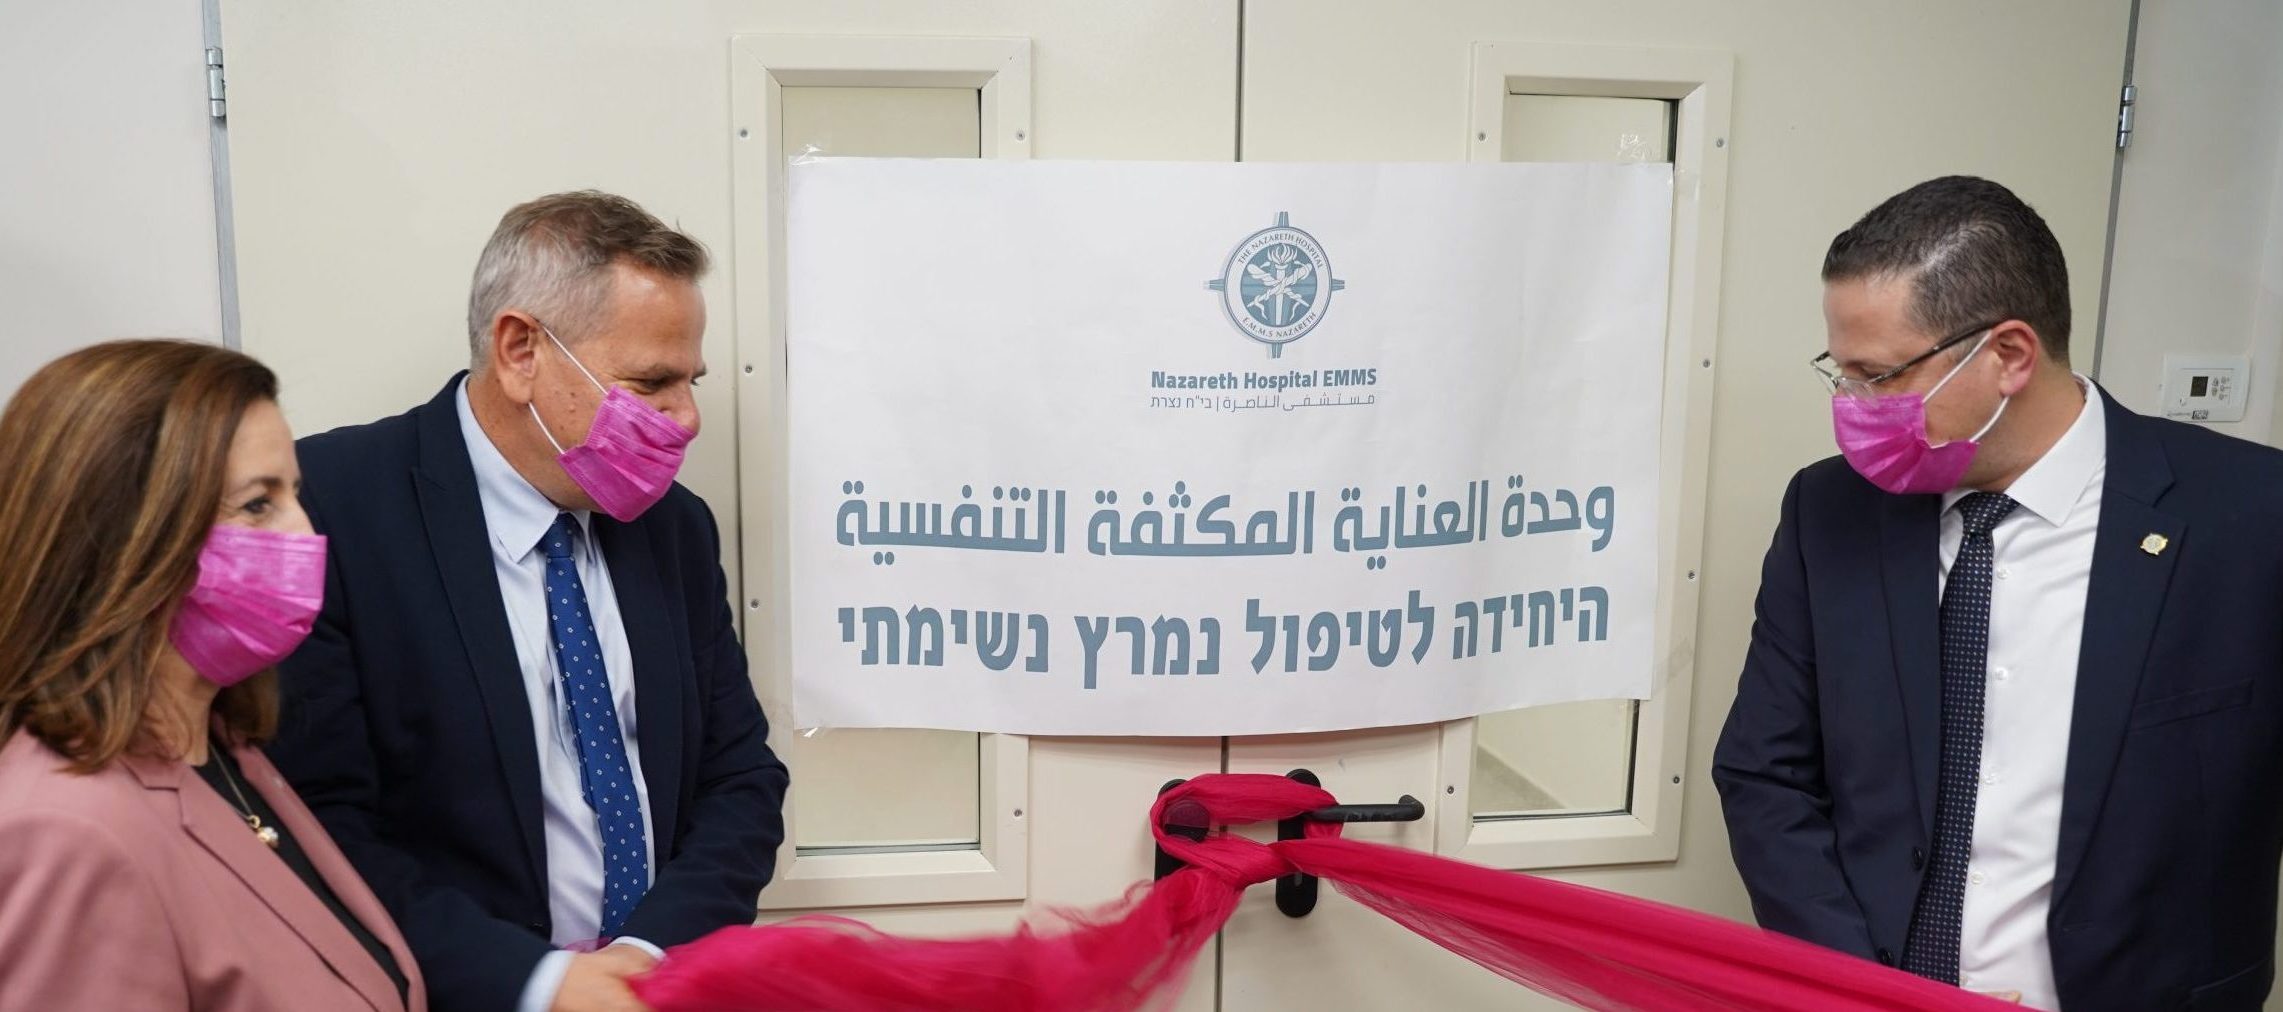 وزير الصحة يزور مستشفى الناصرة-الإنجليزي